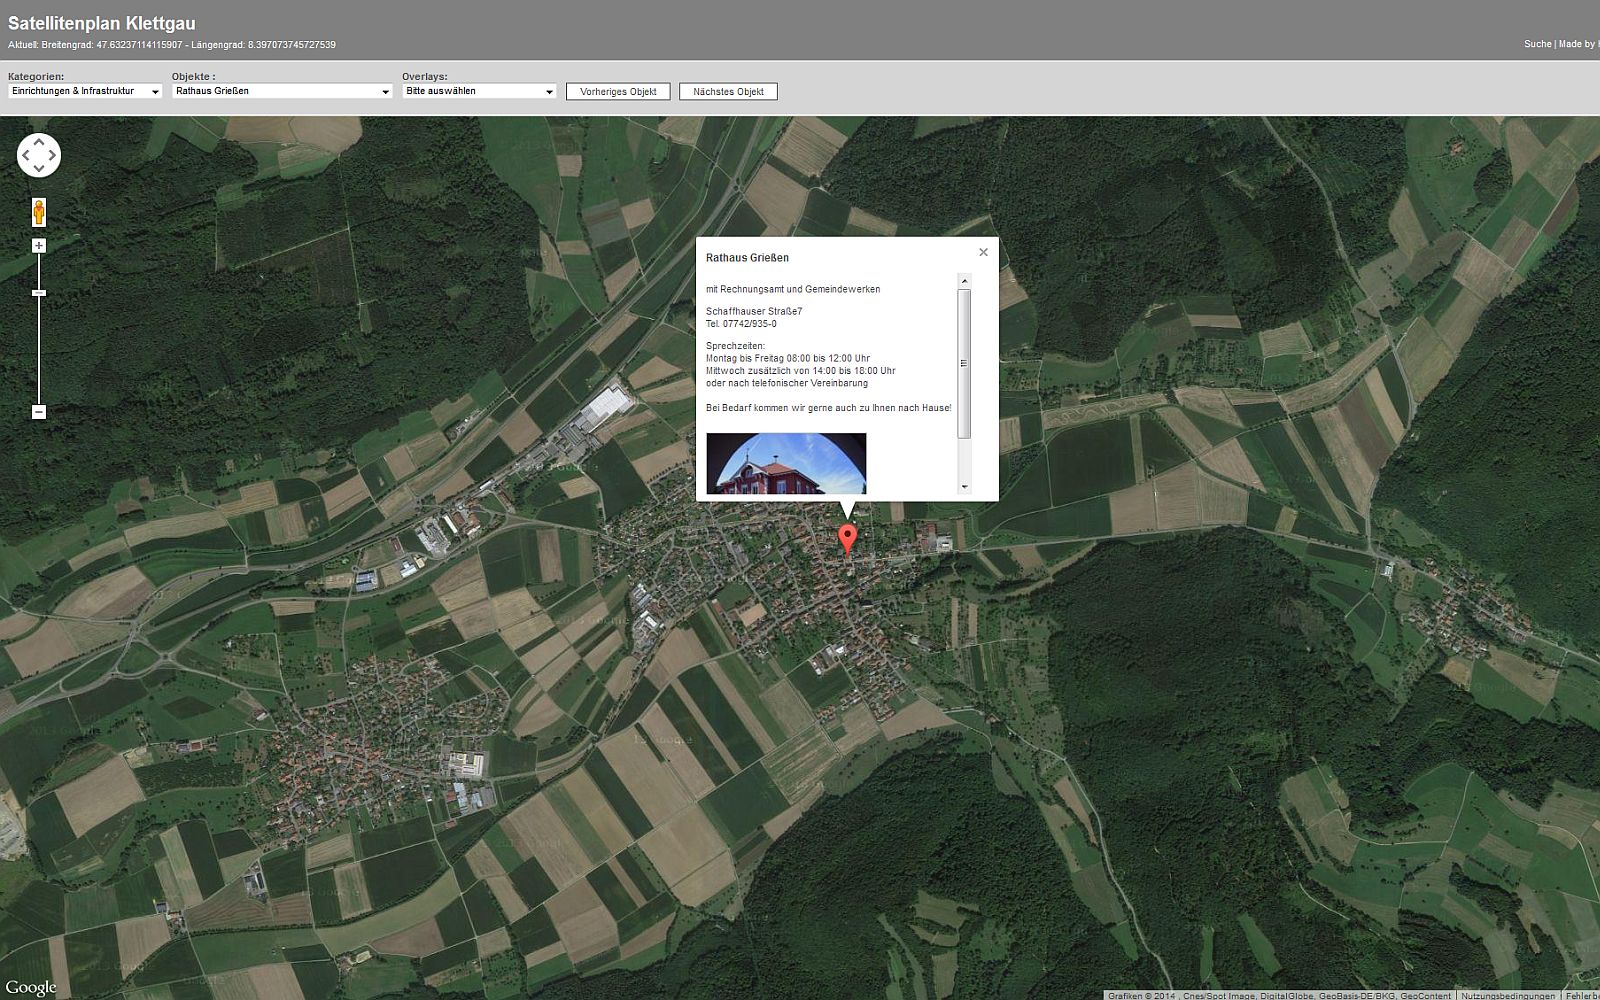  Screenshot Satellitenplan - Öffnet externen Link in neuem Fenster 